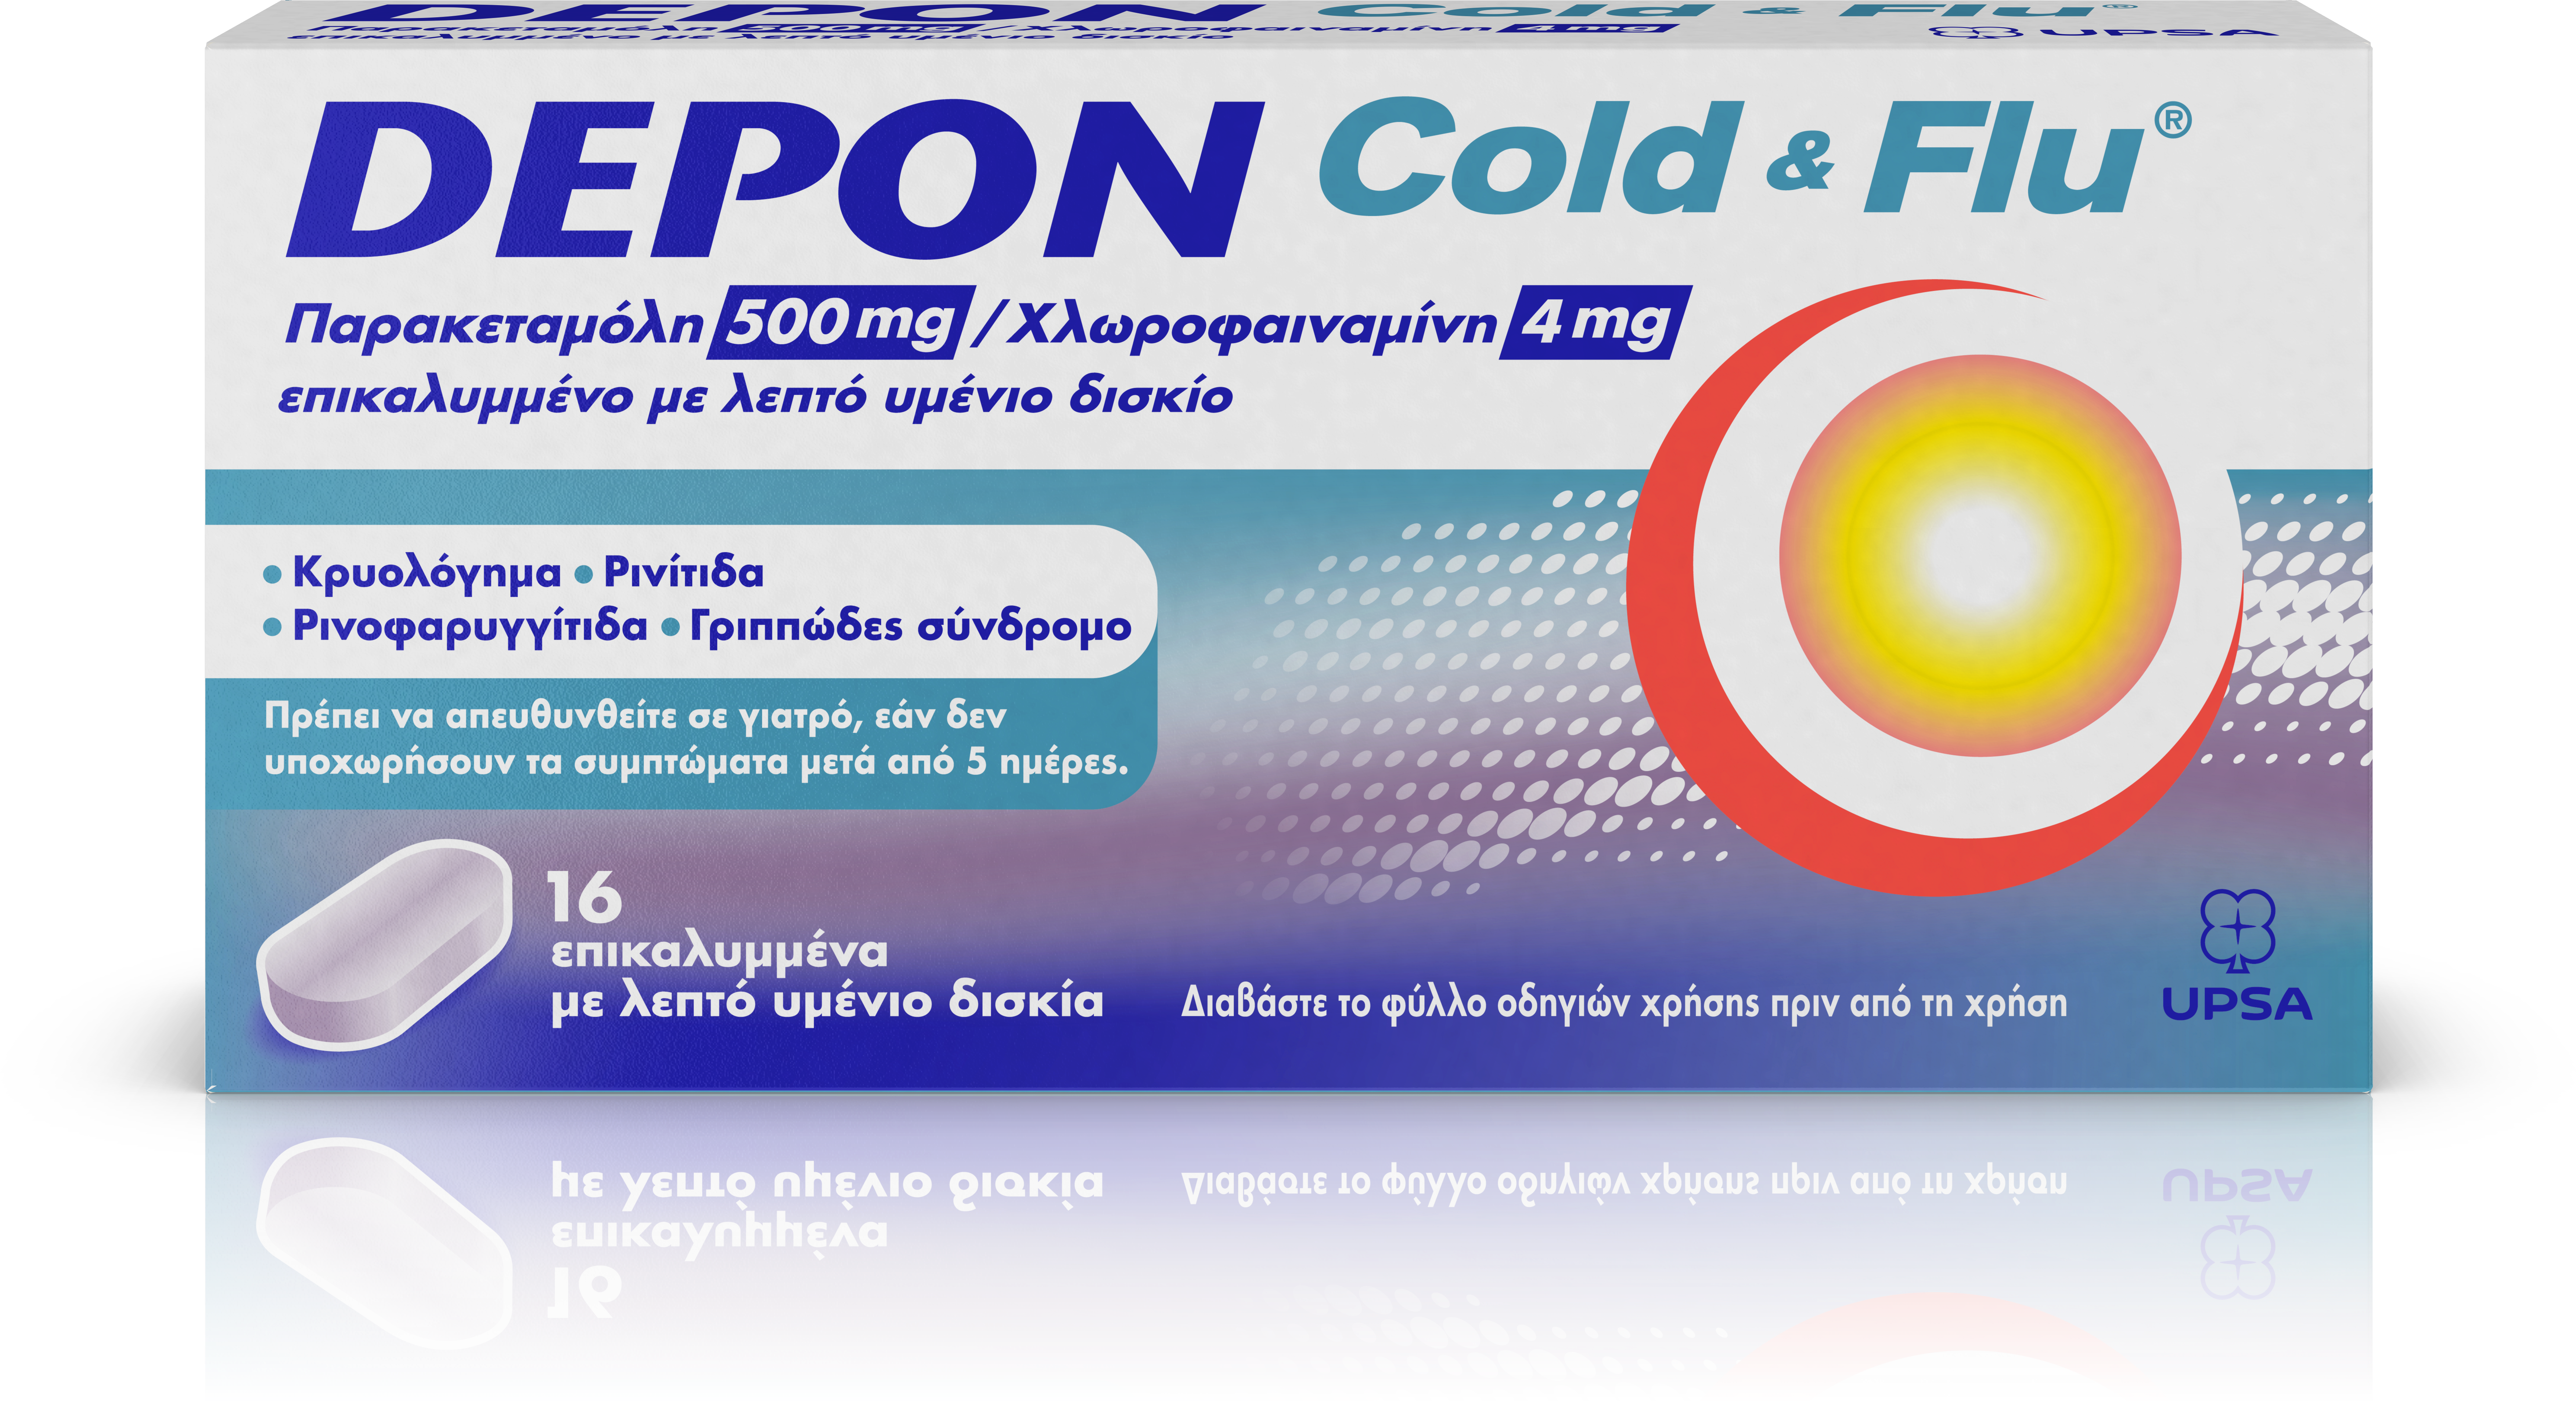 Depon Cold & Fu